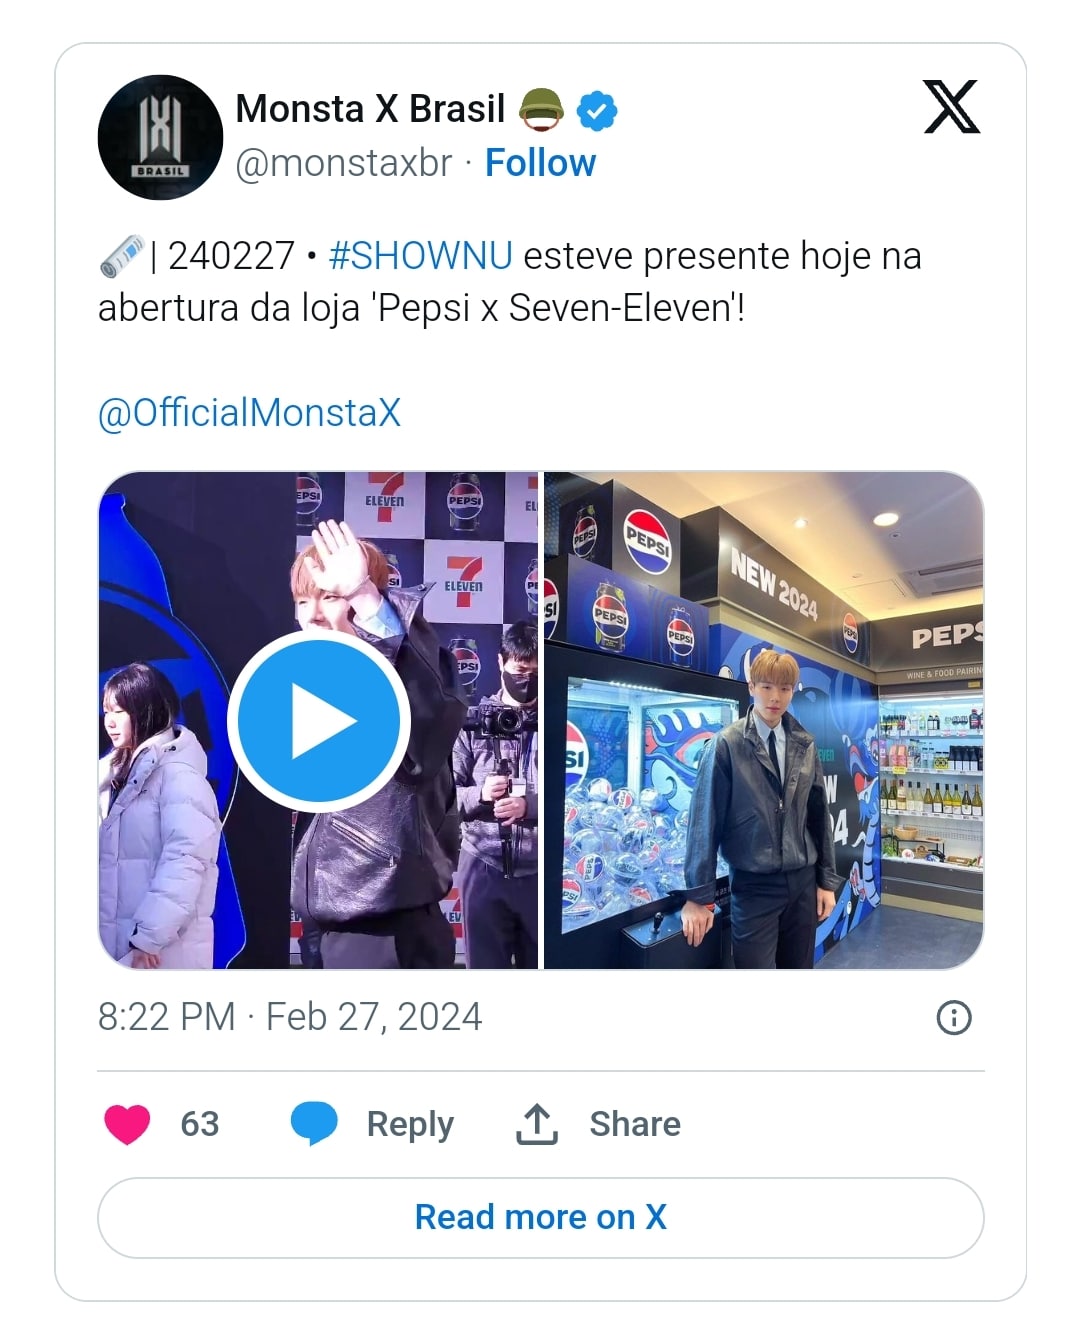 DIVE призвали бойкотировать предстоящий релиз IVE в коллаборации с Pepsi: "Starship, вы серьезно?"